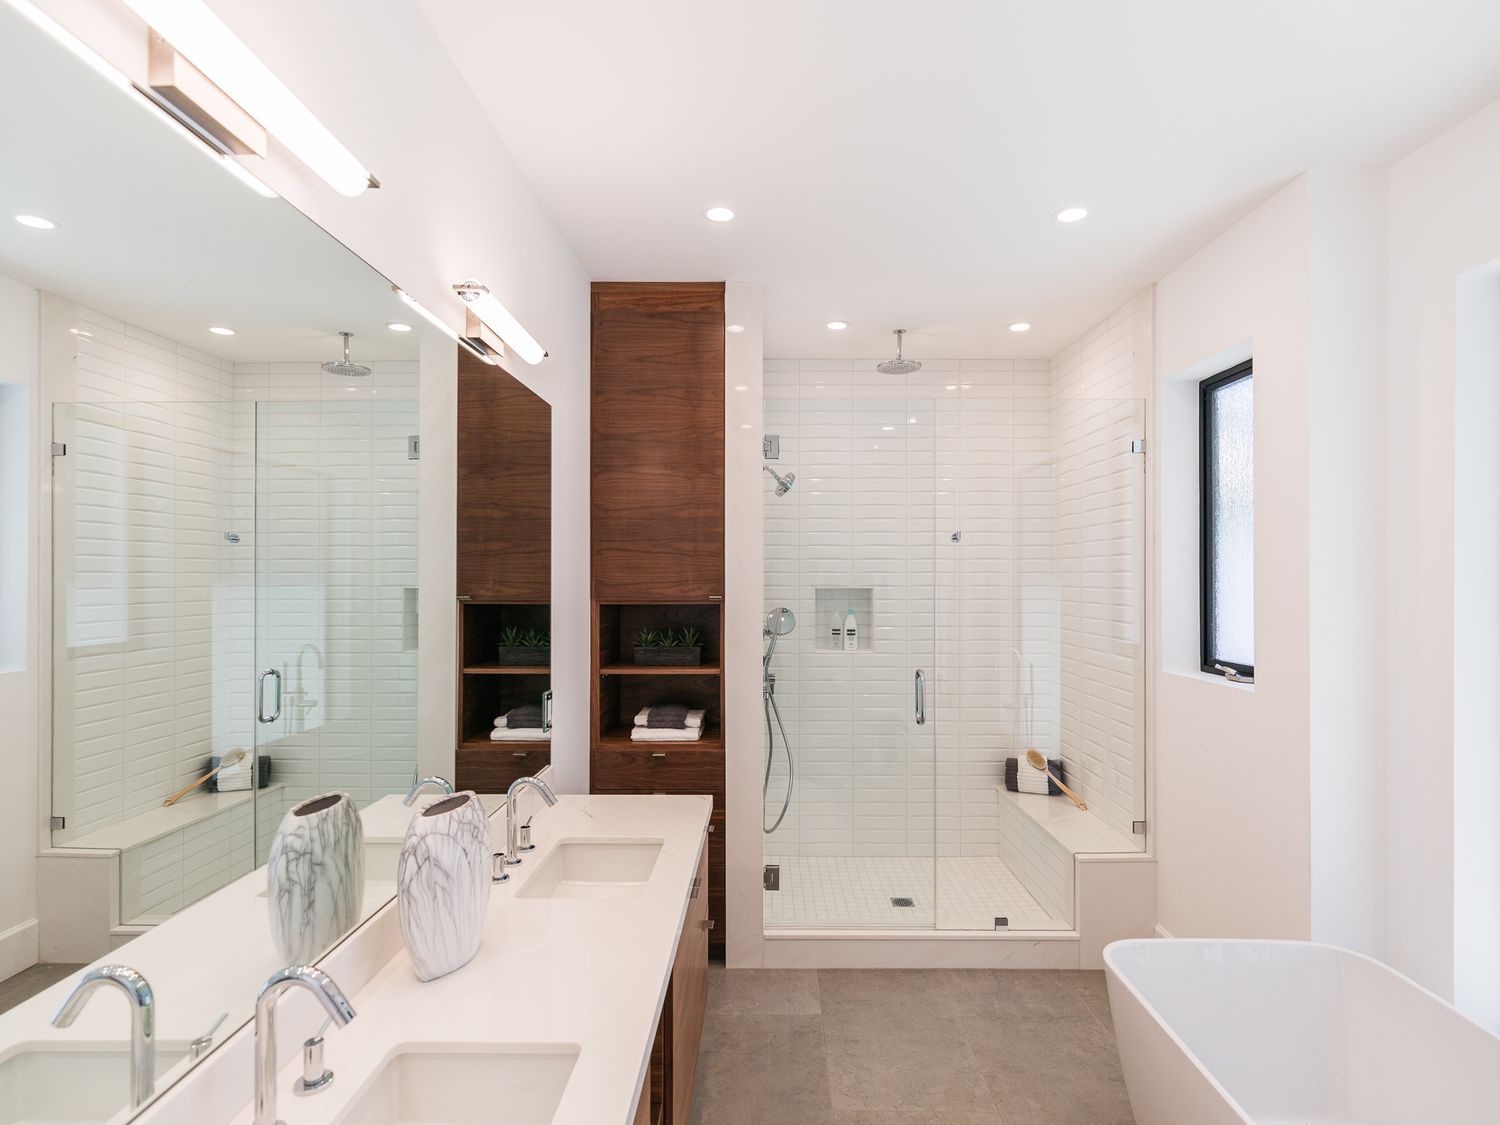 Salle de bain moderne avec armoire en bois entourée de murs et de comptoirs blancs